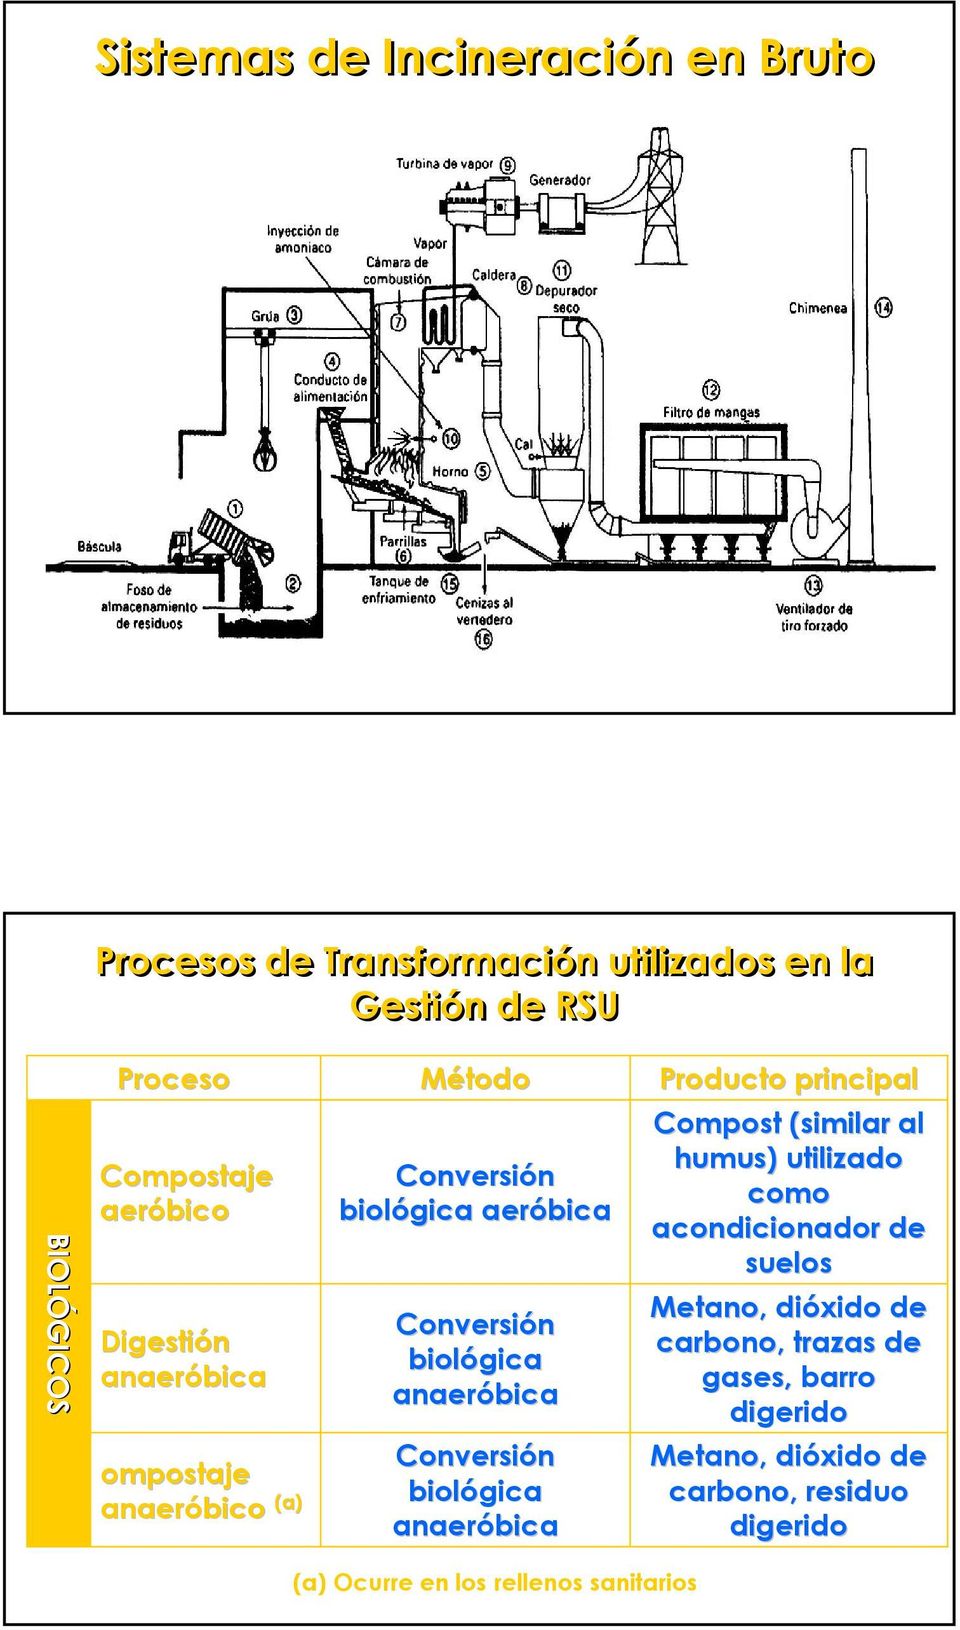 Conversión biológica anaeróbica Producto principal Compost (similar al humus) utilizado como acondicionador de suelos Metano,